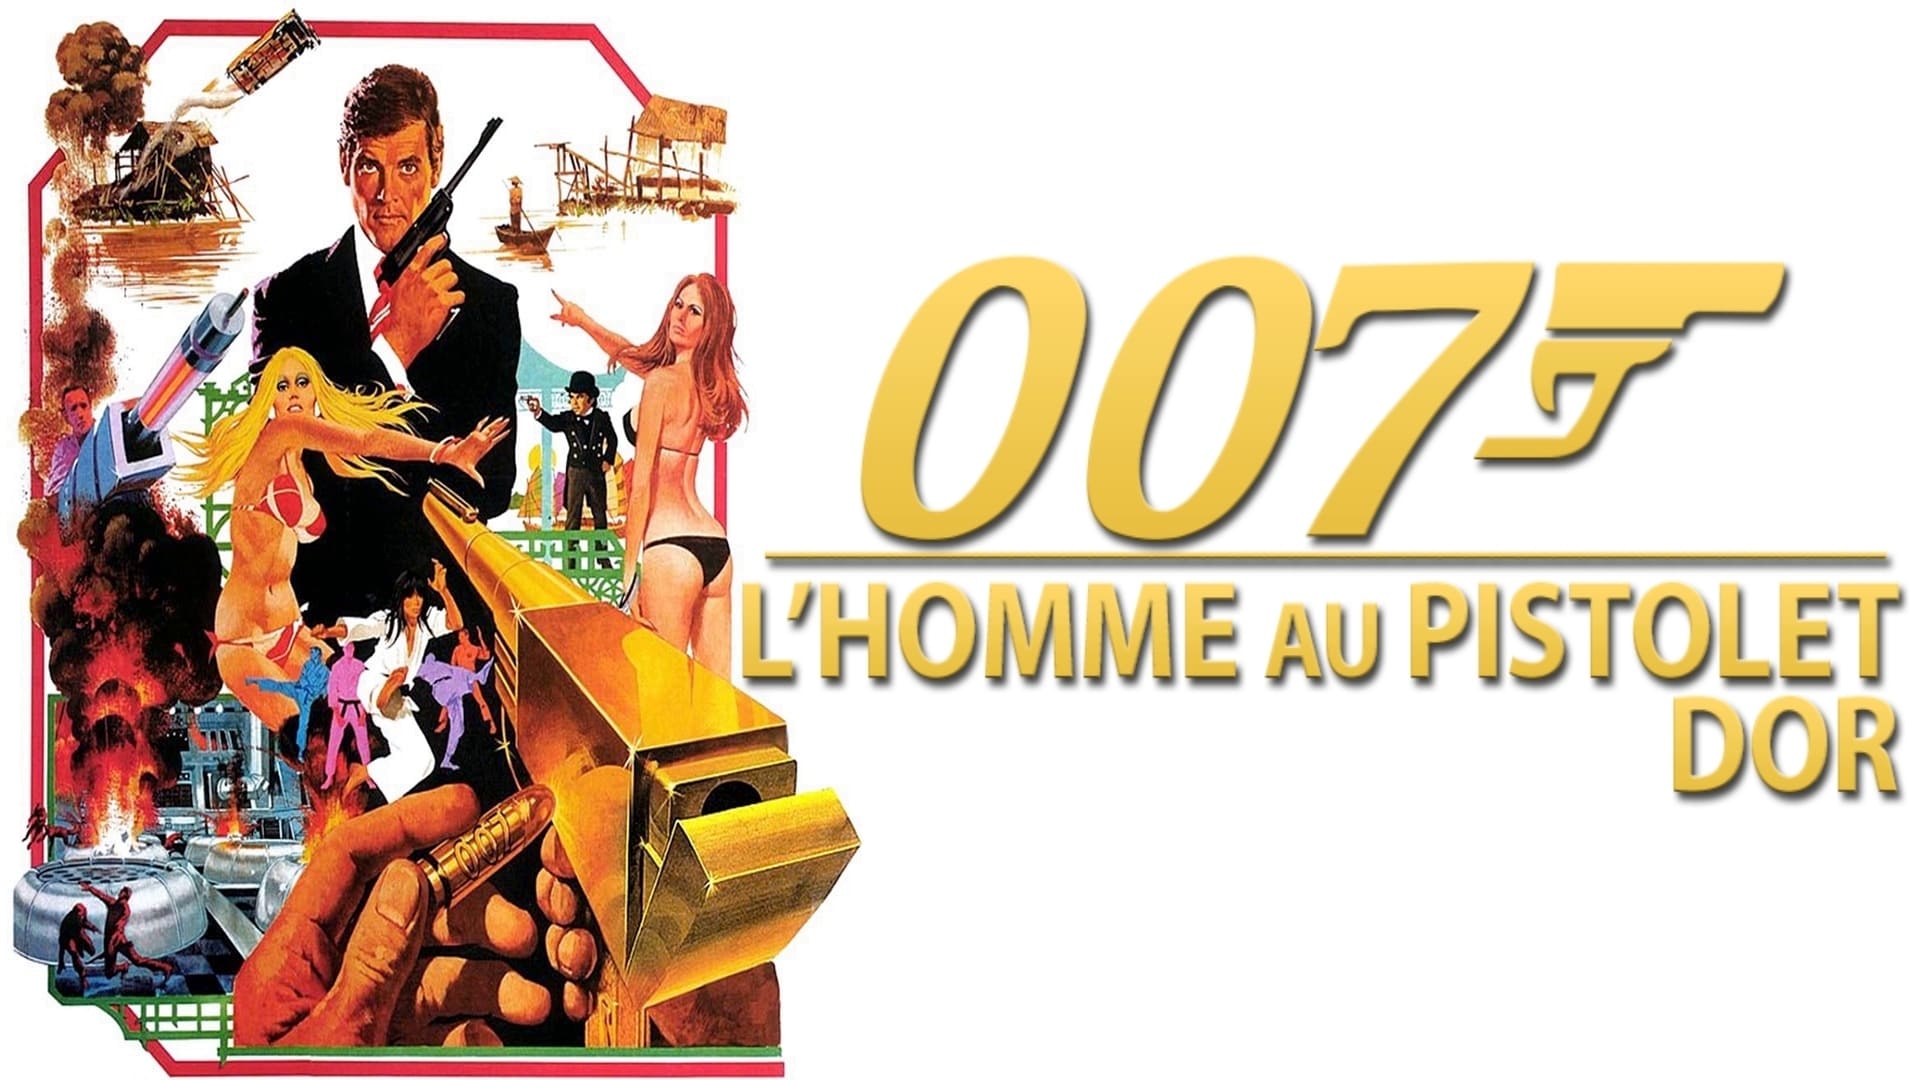 Image du film L'Homme au pistolet d'or i8vltzllmpd89ixyireqnkb8lgzjpg